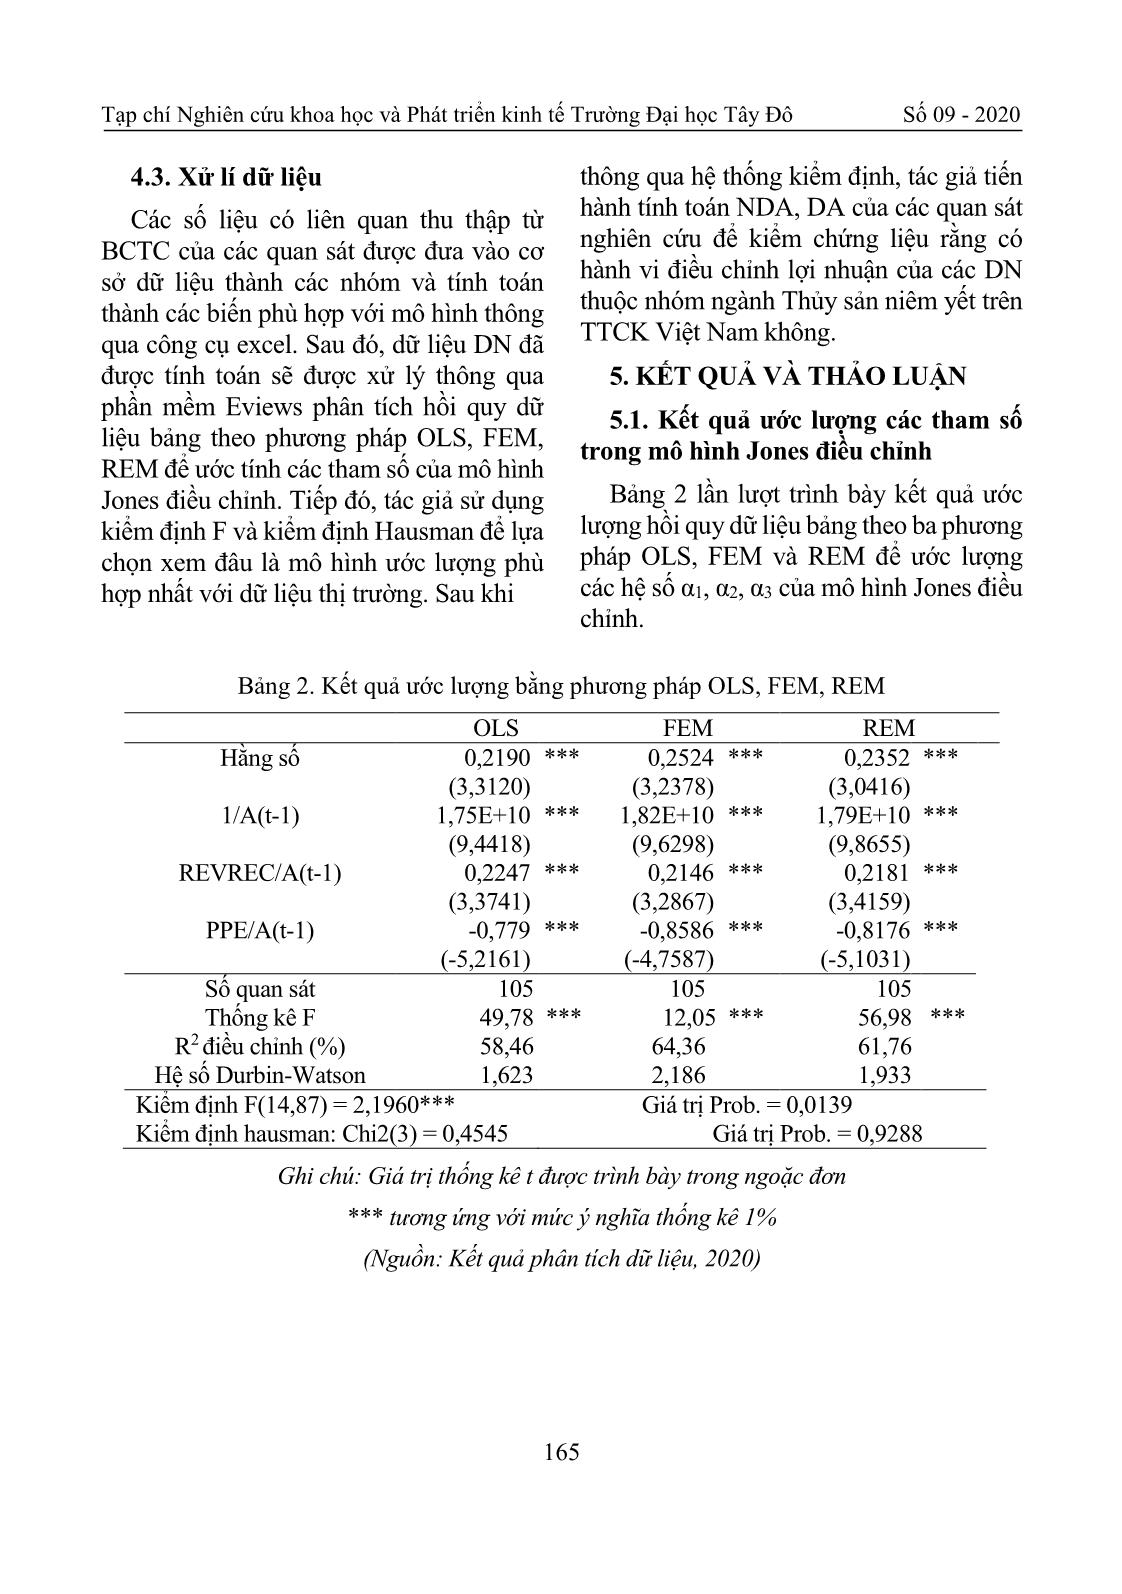 Nghiên cứu hành vi quản trị lợi nhuận trên Báo cáo tài chính của các doanh nghiệp thuộc nhóm ngành thủy sản niêm yết trên thị trường chứng khoán Việt Nam trang 7